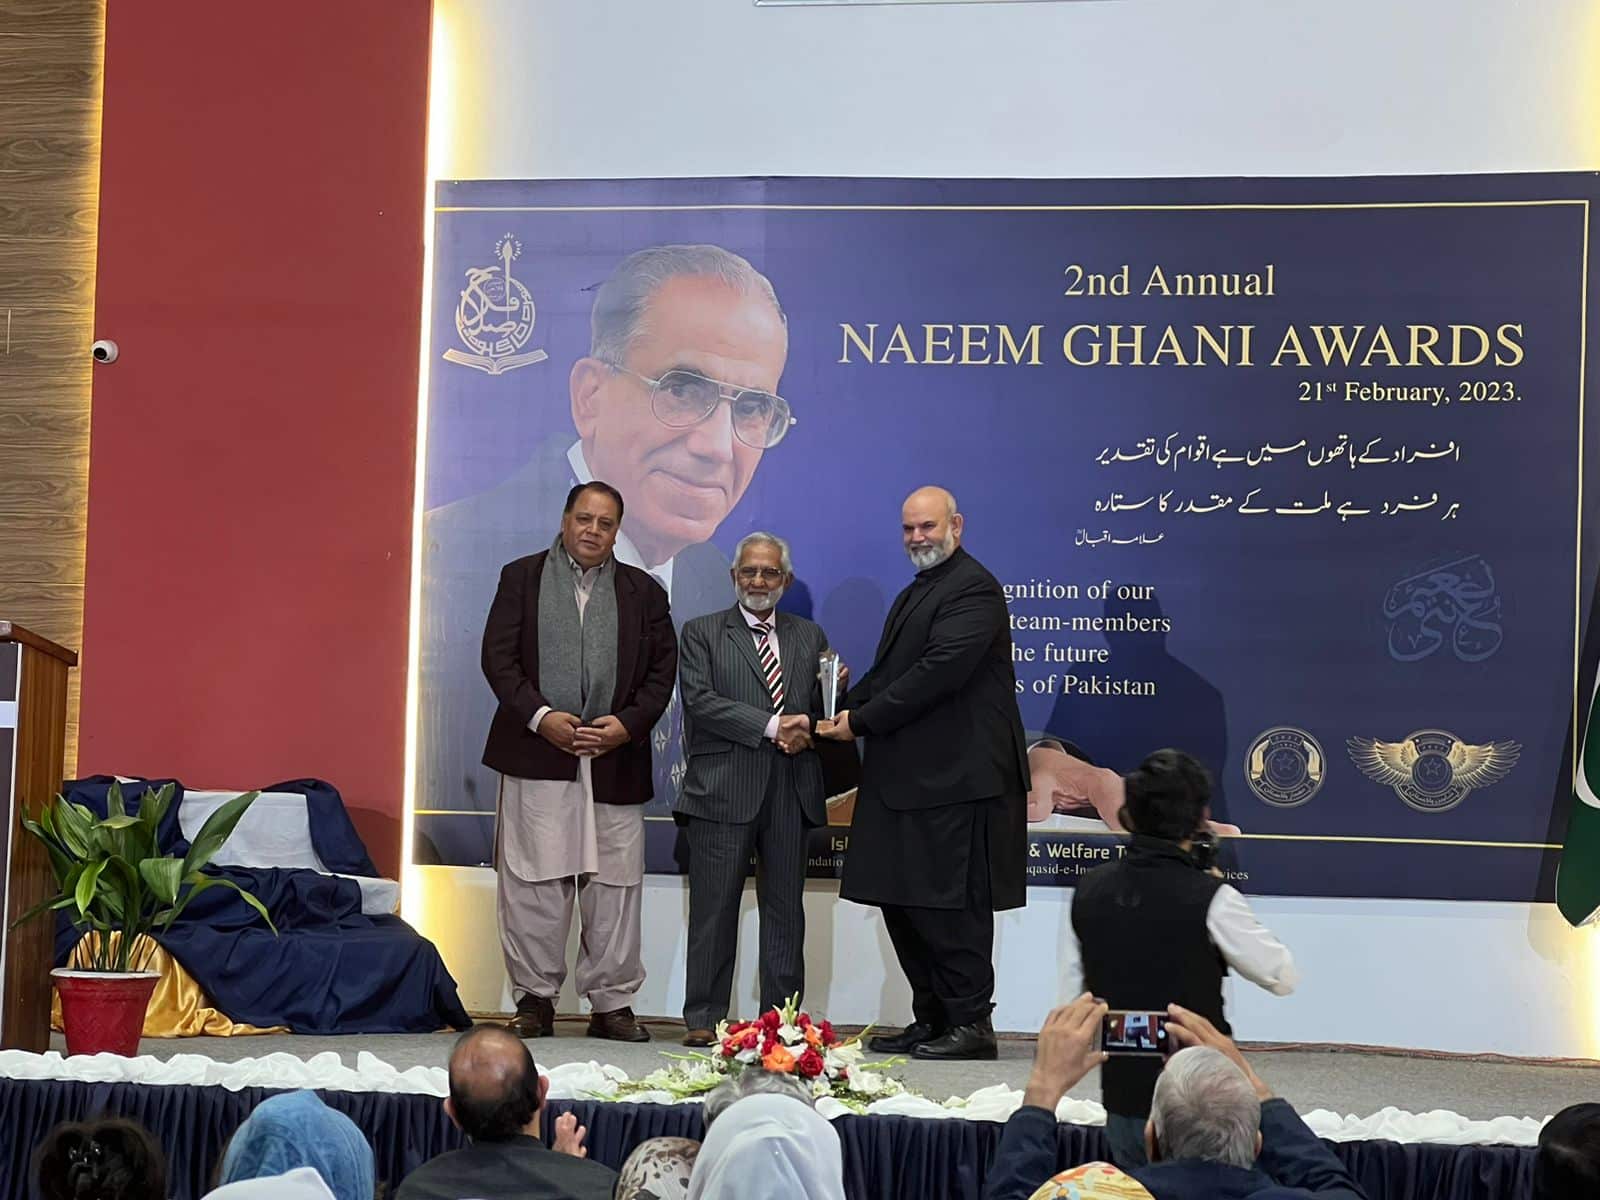 Naeem Ghani award 2023